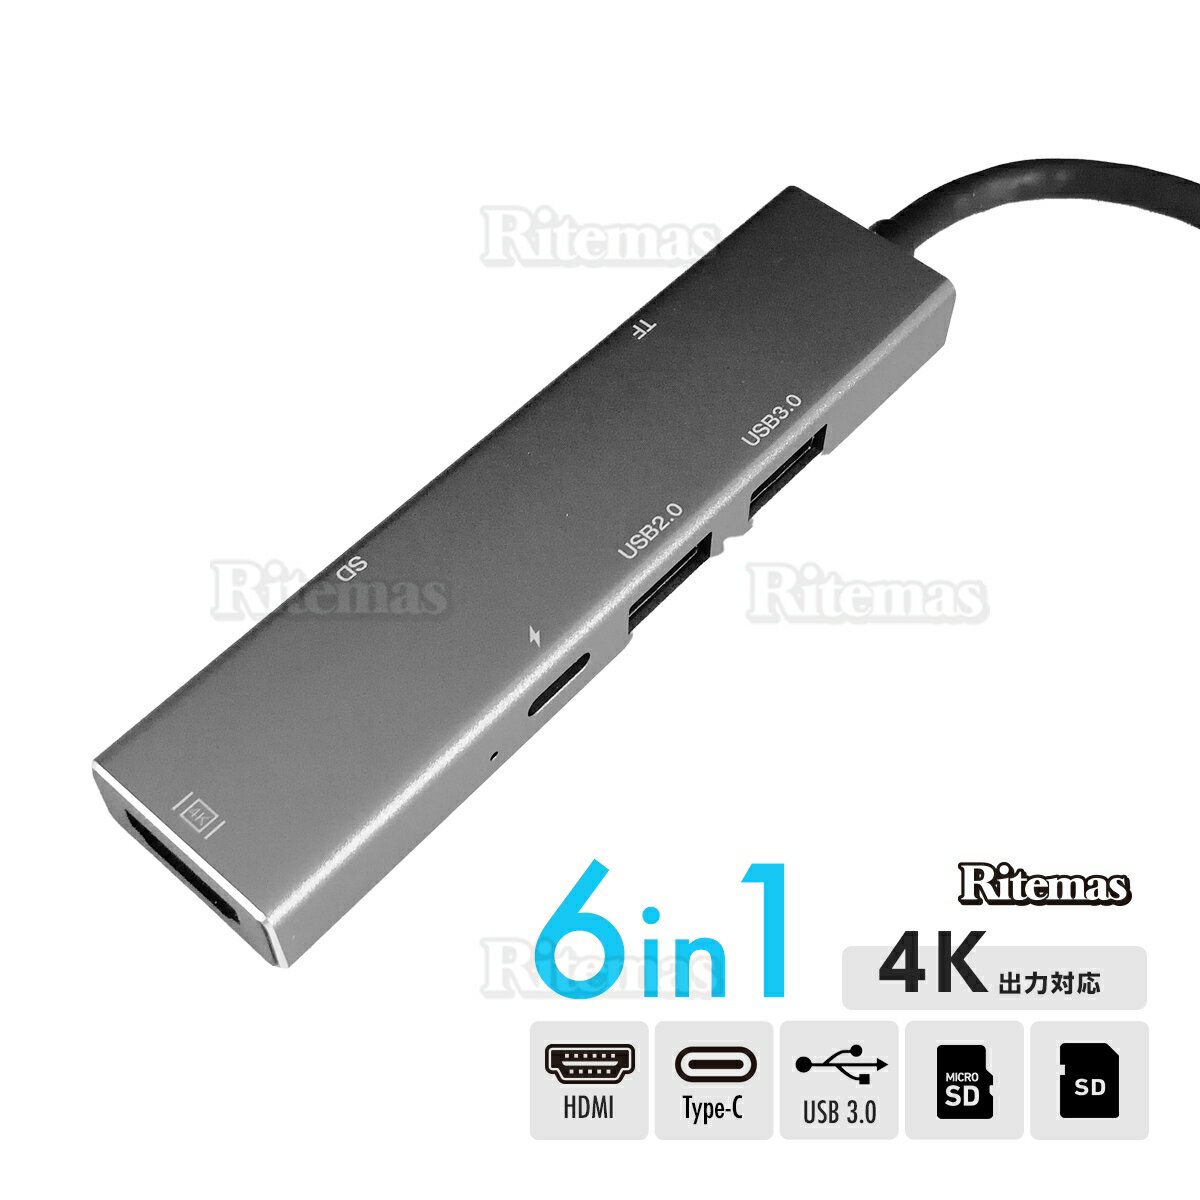 6in1 USB type-C typec マルチポート マルチハブ 変換アダプタ マルチアダプタ スリム 薄型 コンパクト 軽量 USBハブ 4K SDカード microSD カードリーダー ドッキングステーション Hub HDMI出力 PD給電 充電 高速通信 USB3.0 マイクロ リーダー タイプC 変換 アダプタ